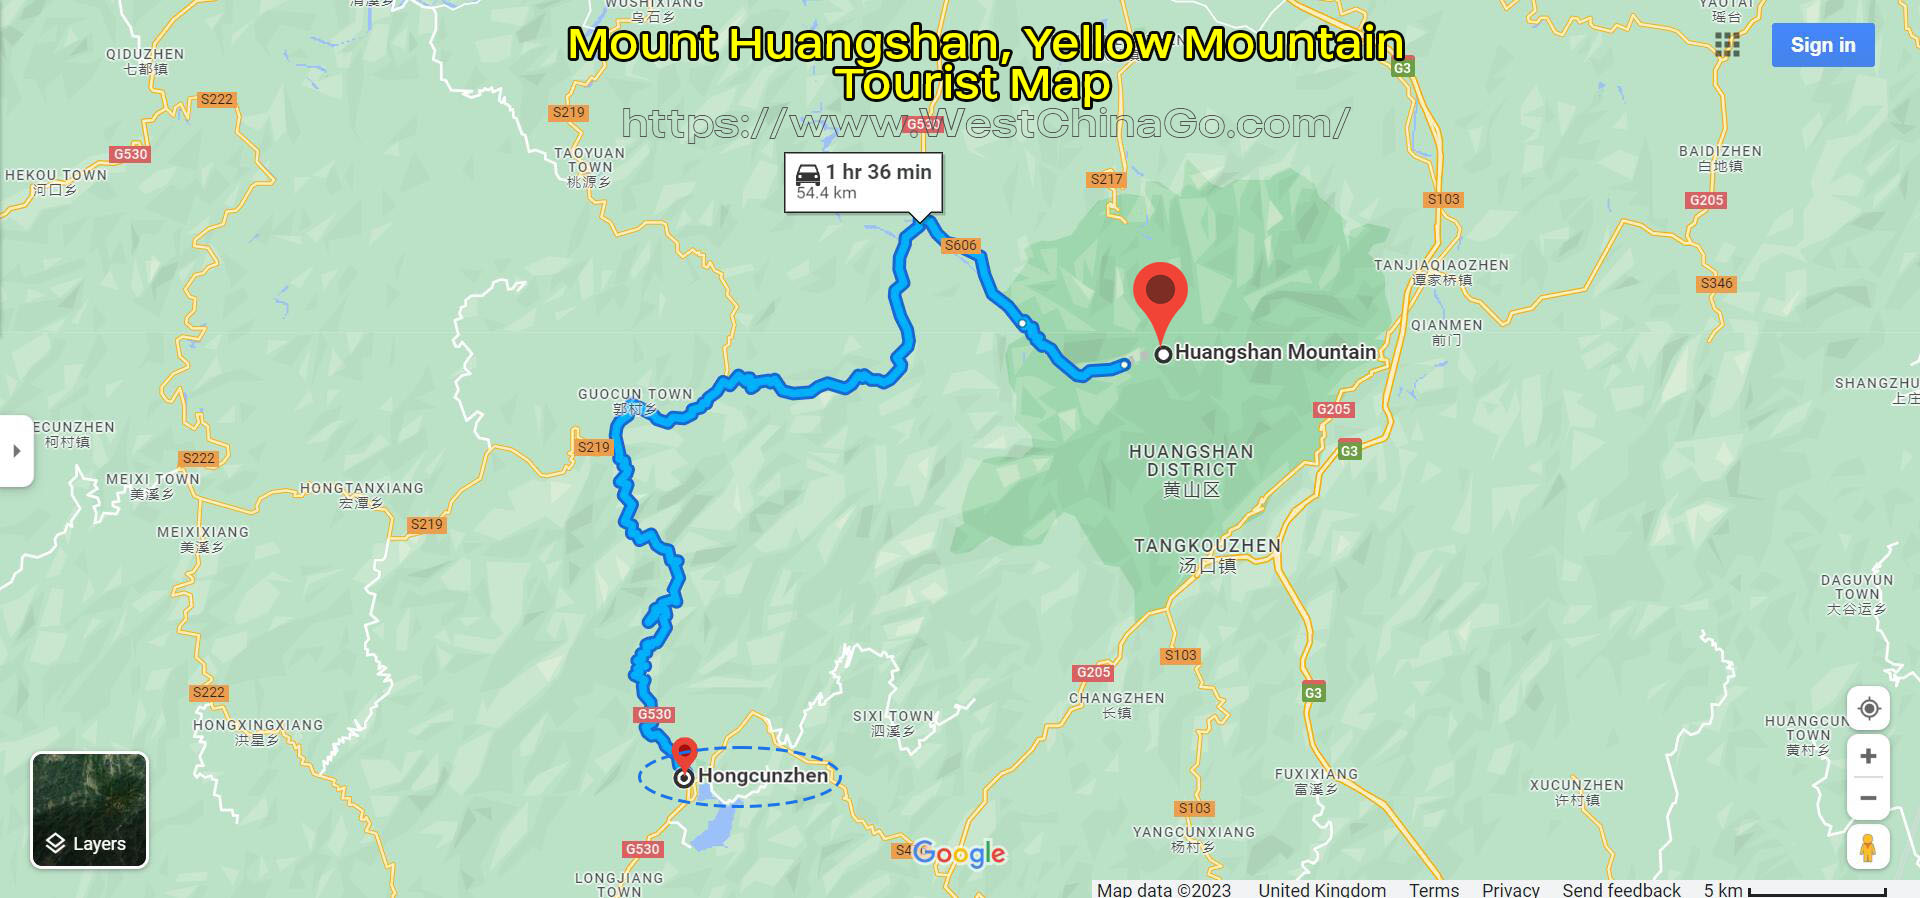 Mount Huangshan, Yellow Mountain Tourist Map